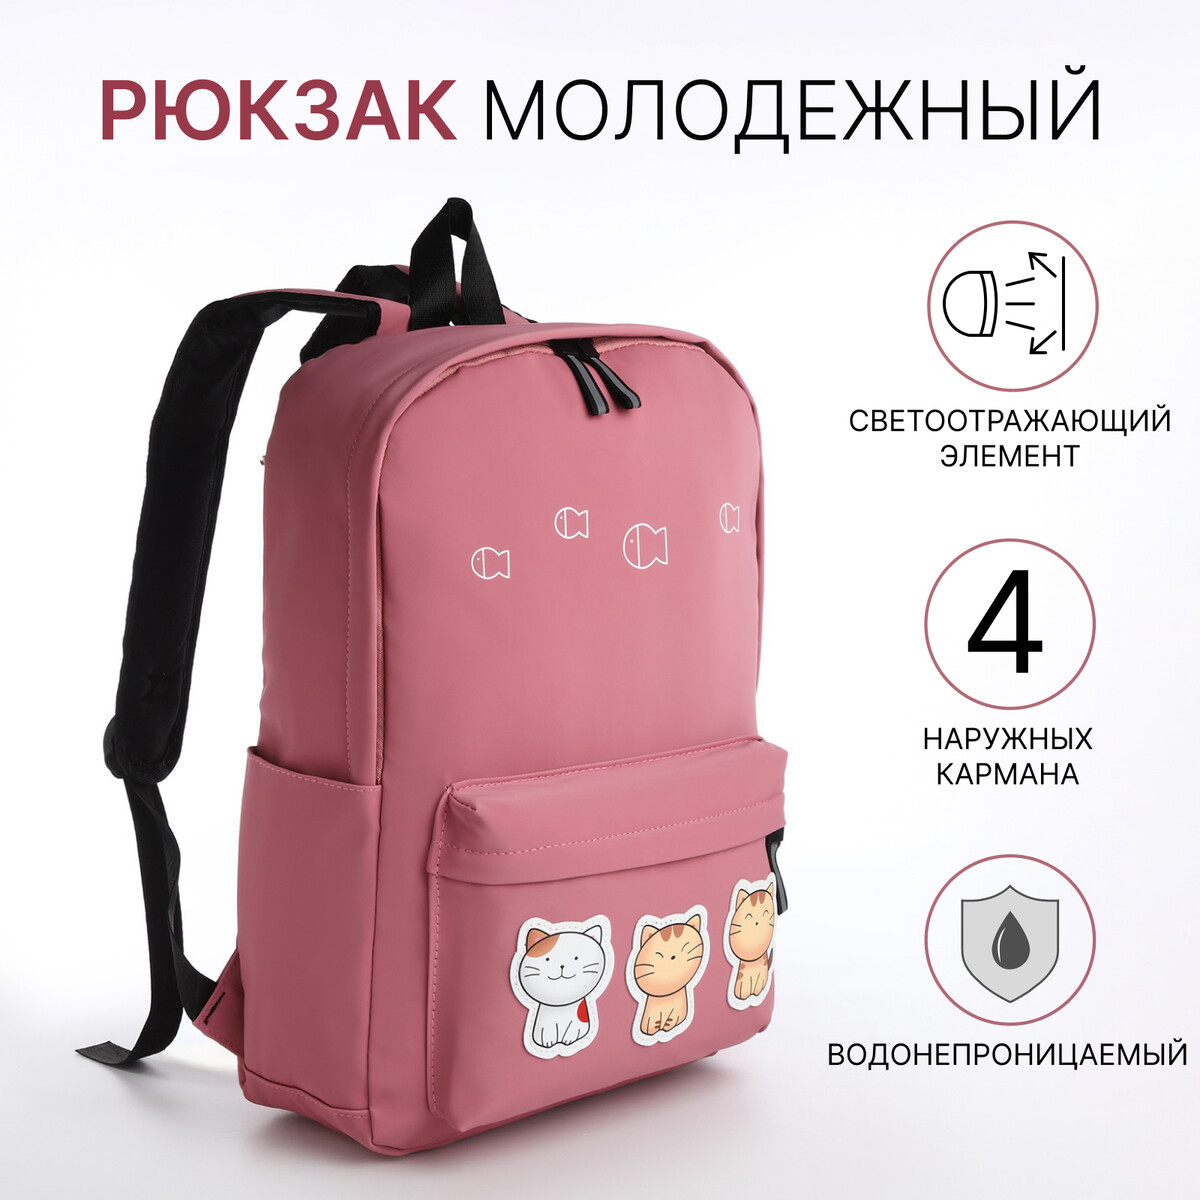 Рюкзак молодежный из текстиля на молнии, 4 кармана, цвет розовый рюкзак молодежный из текстиля 4 кармана бордовый